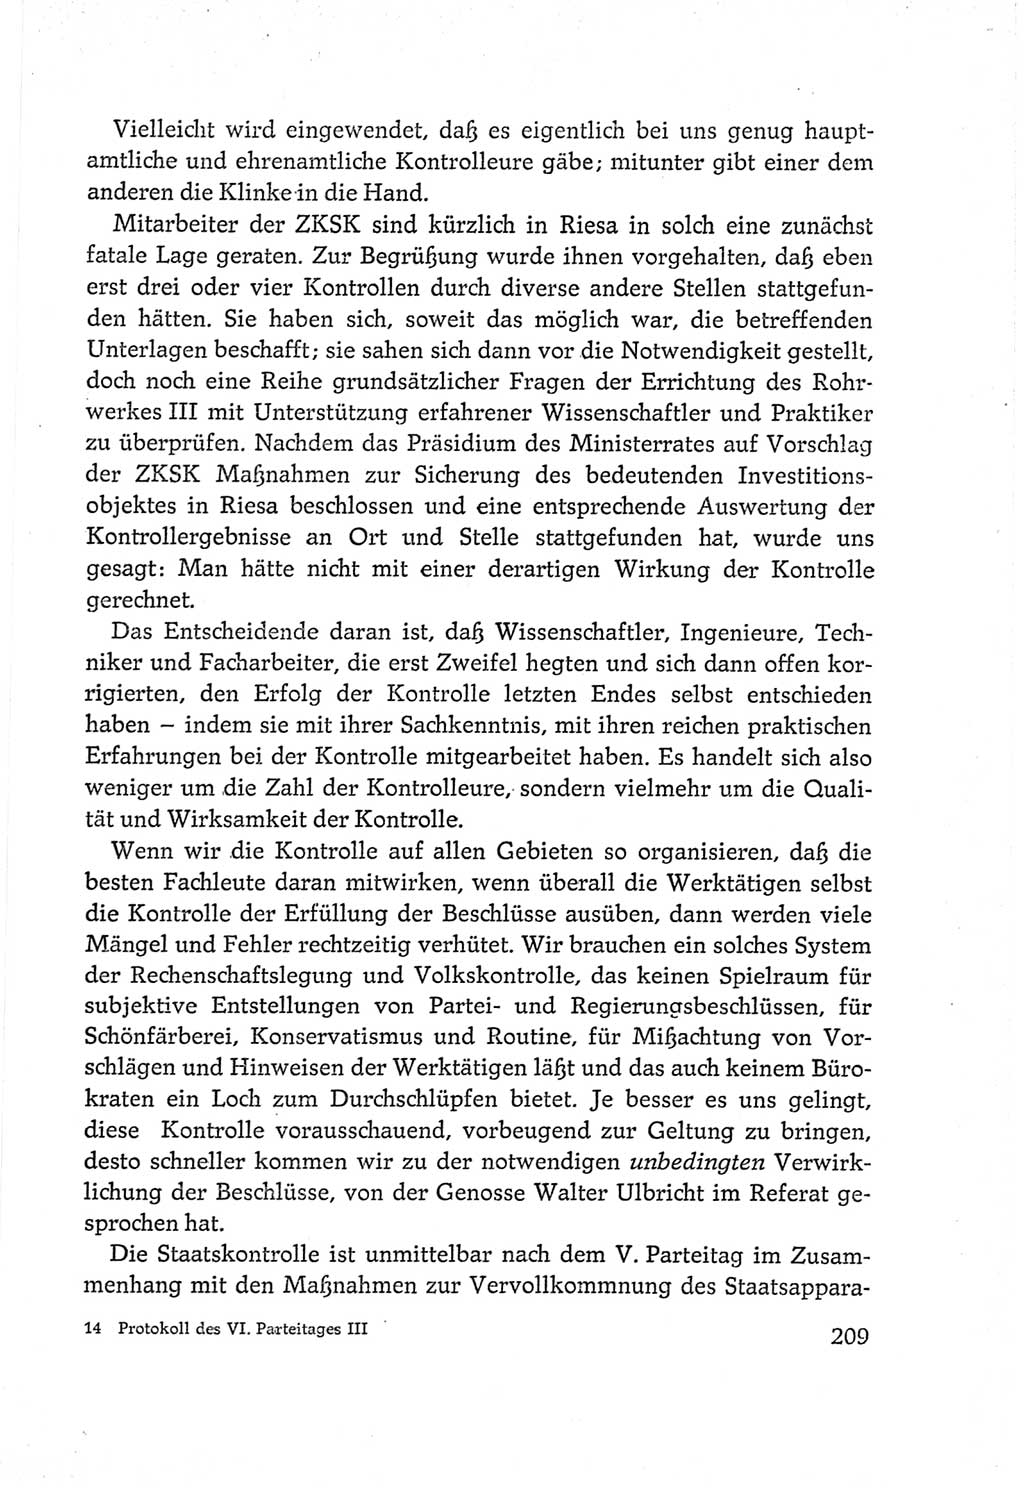 Protokoll der Verhandlungen des Ⅵ. Parteitages der Sozialistischen Einheitspartei Deutschlands (SED) [Deutsche Demokratische Republik (DDR)] 1963, Band Ⅲ, Seite 209 (Prot. Verh. Ⅵ. PT SED DDR 1963, Bd. Ⅲ, S. 209)